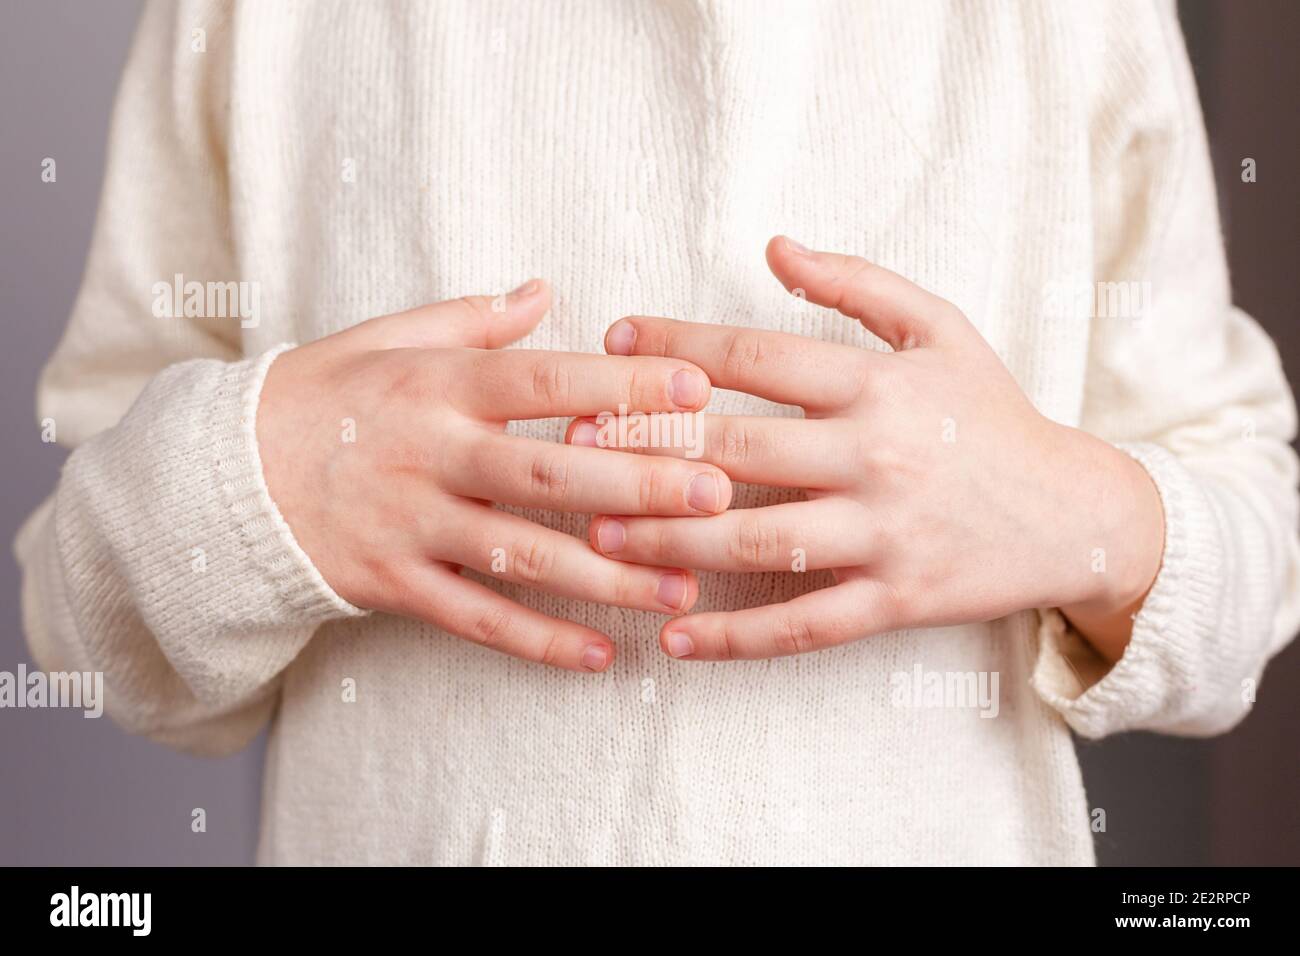 Primo piano delle mani di un bambino ripiegate sullo stomaco con le dita intrecciate, in un maglione leggero lavorato a maglia color champagne Foto Stock